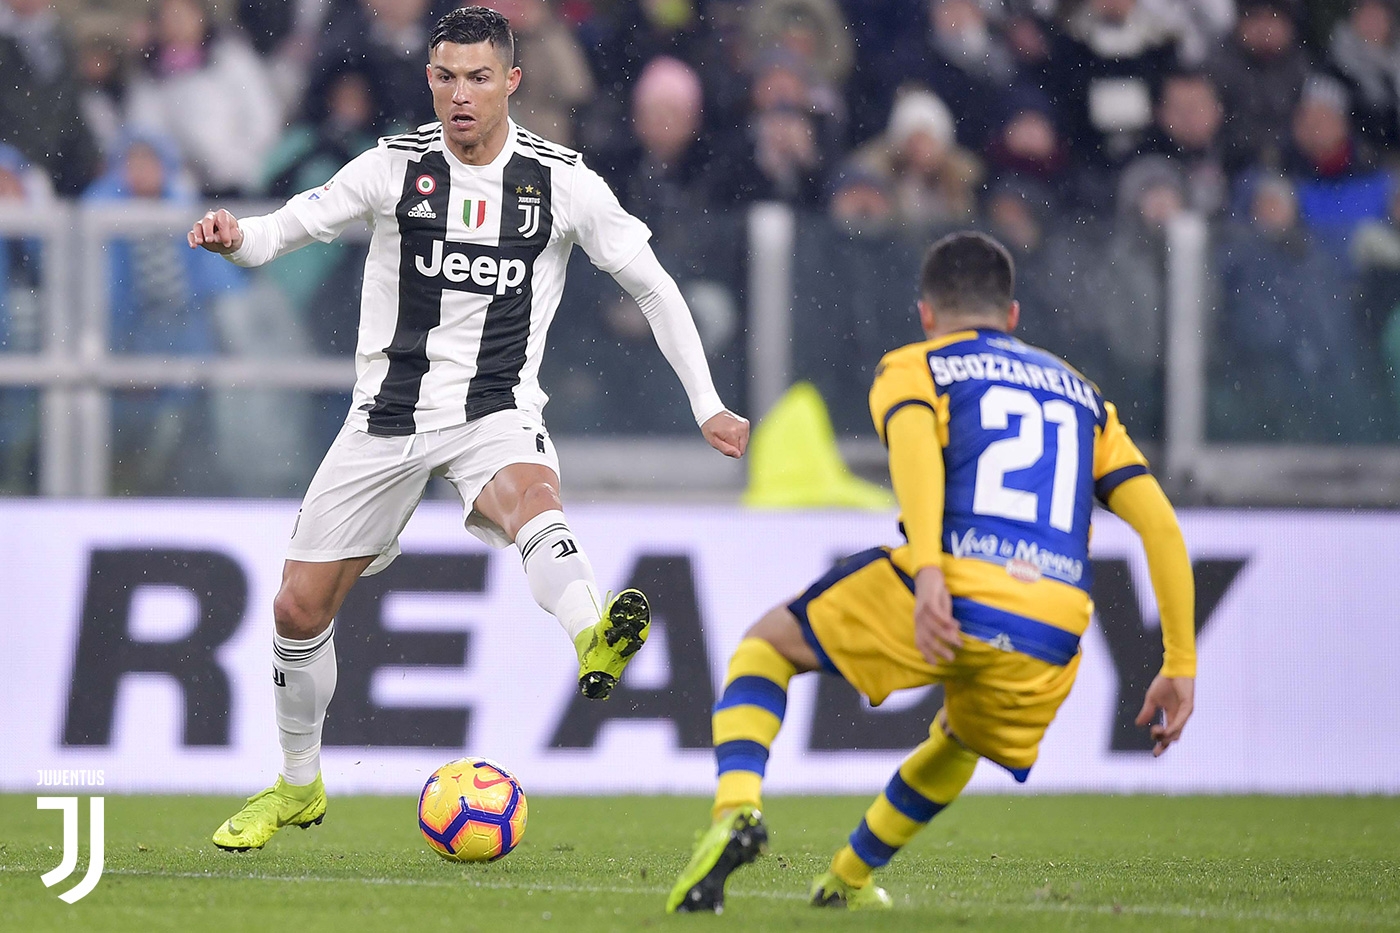 Vòng 1 Serie A 2019/20: Xem trực tiếp bóng đá Parma vs Juventus ở đâu?